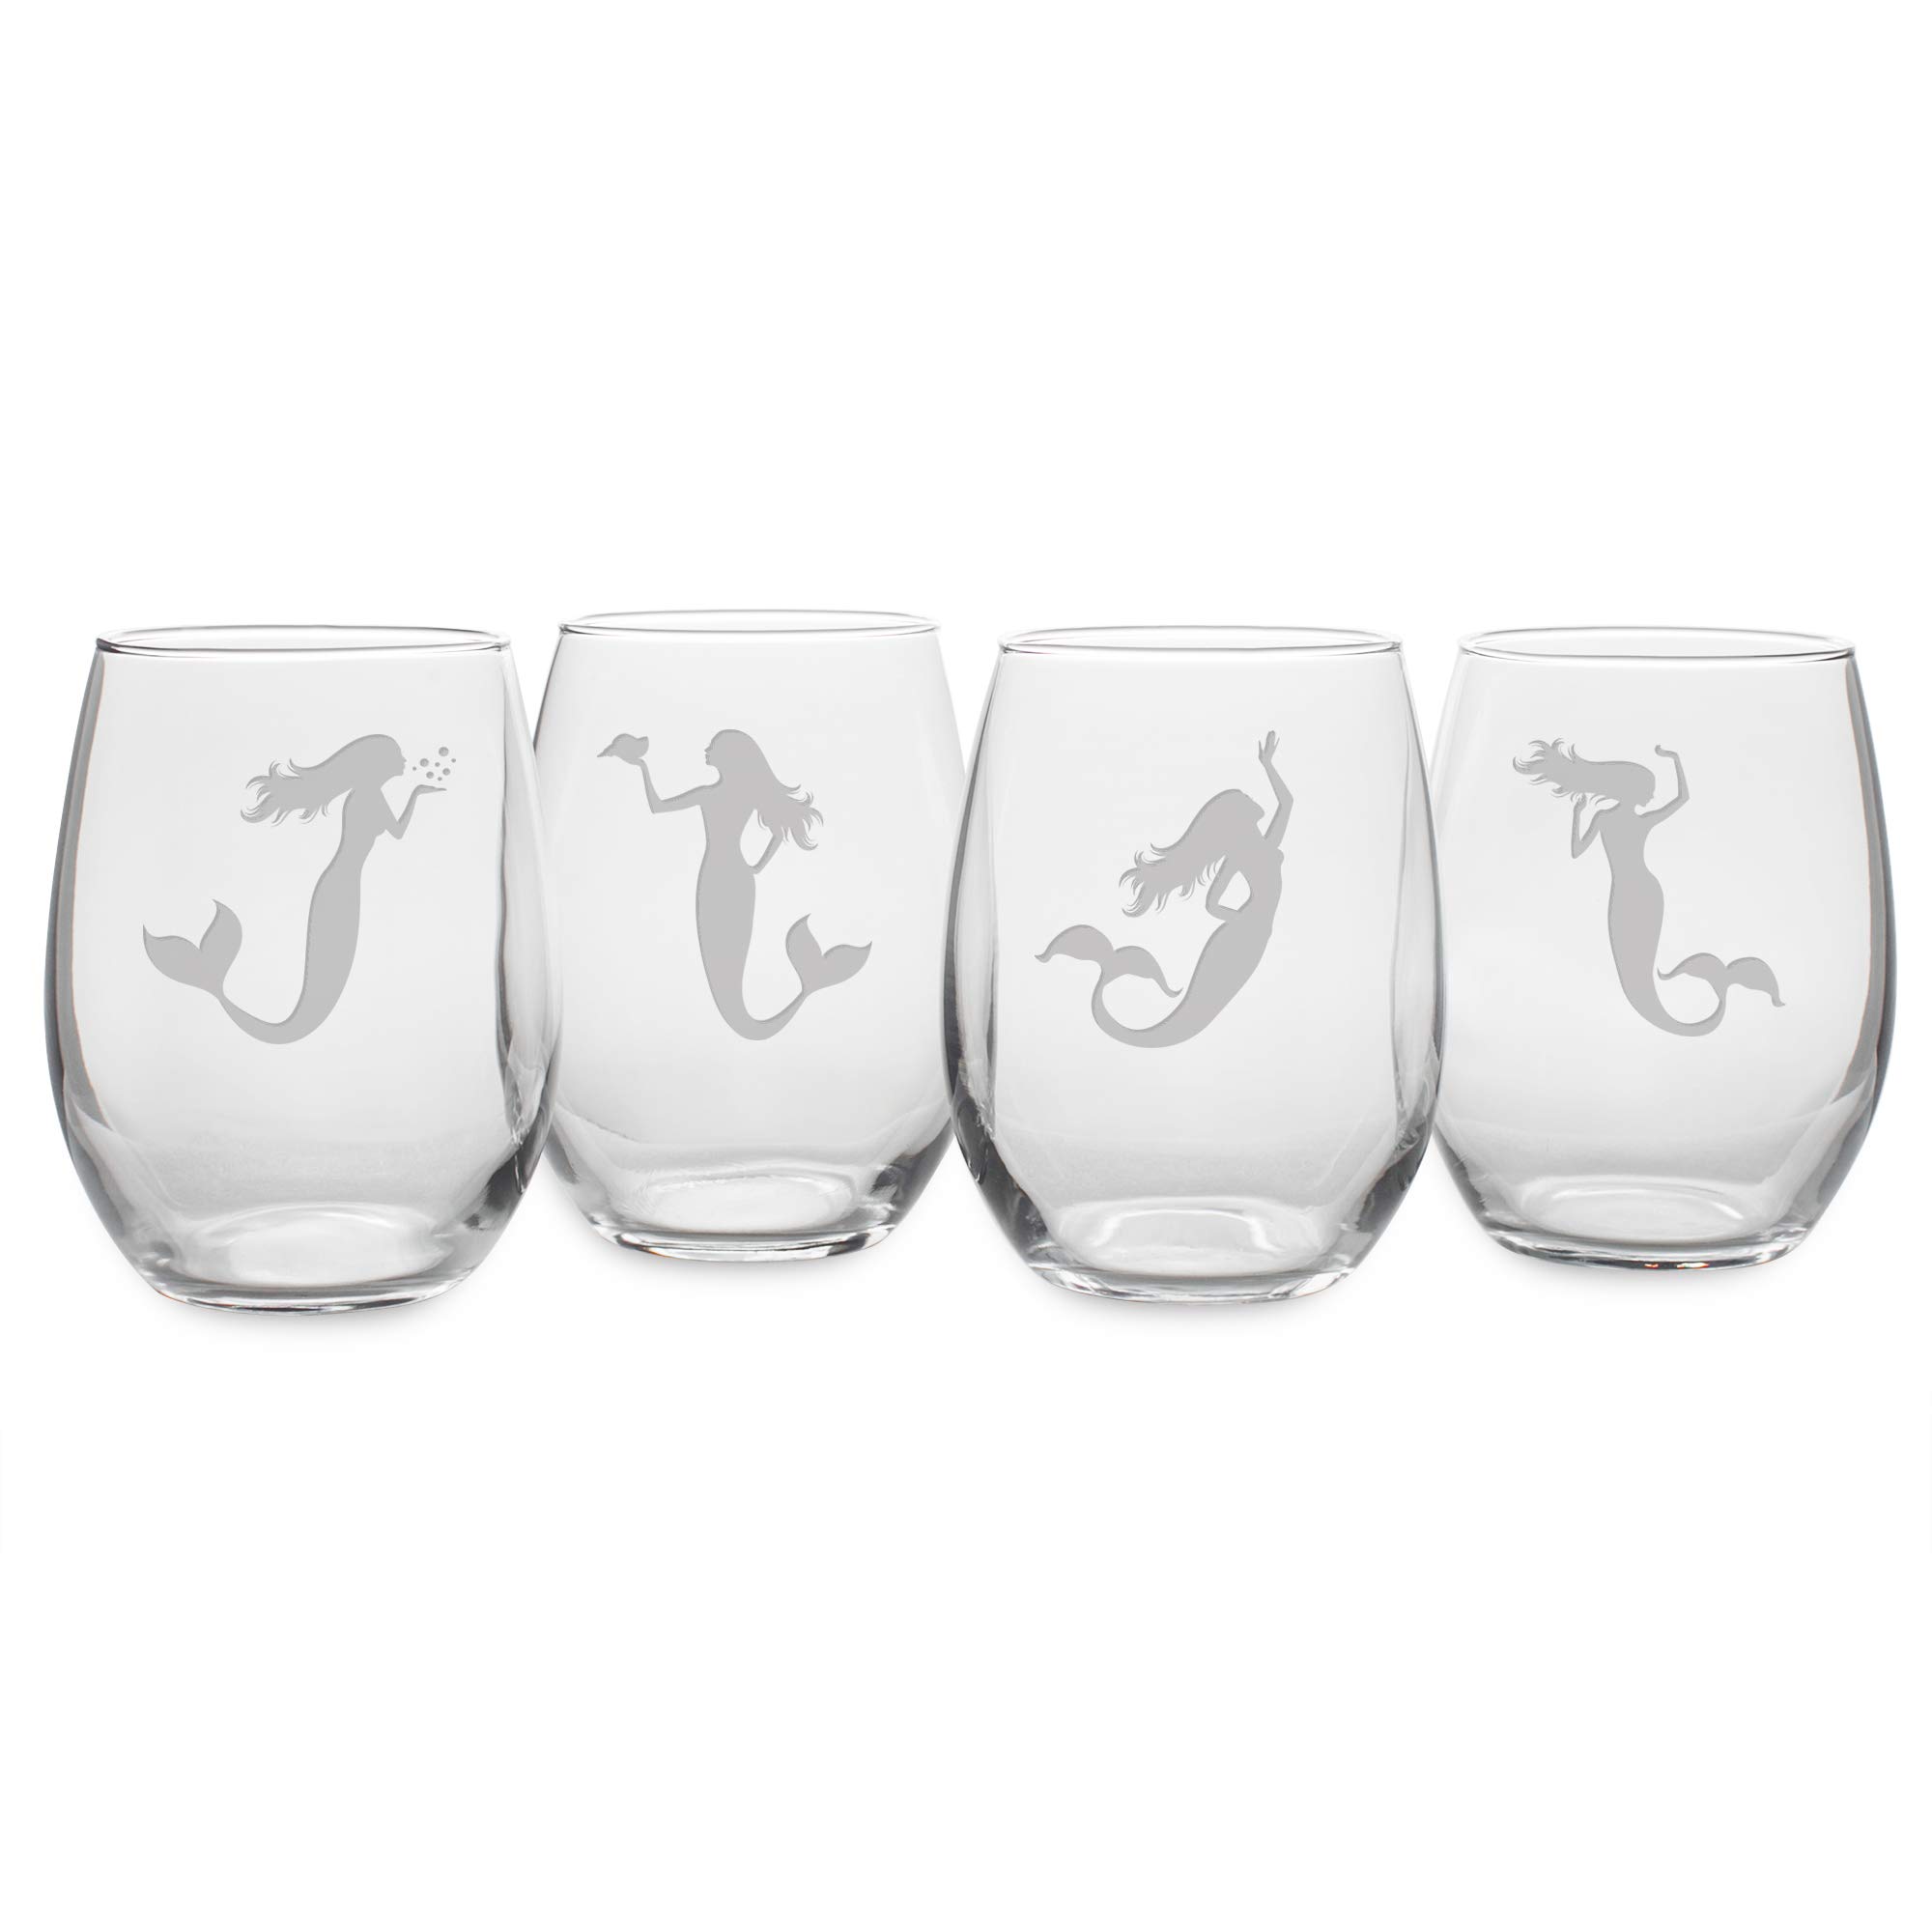 Happy Hour Glassware by Susquehanna Glass Company - Mermaid, 21 oz. Stemless Wine Glass, Satin, Set of 4